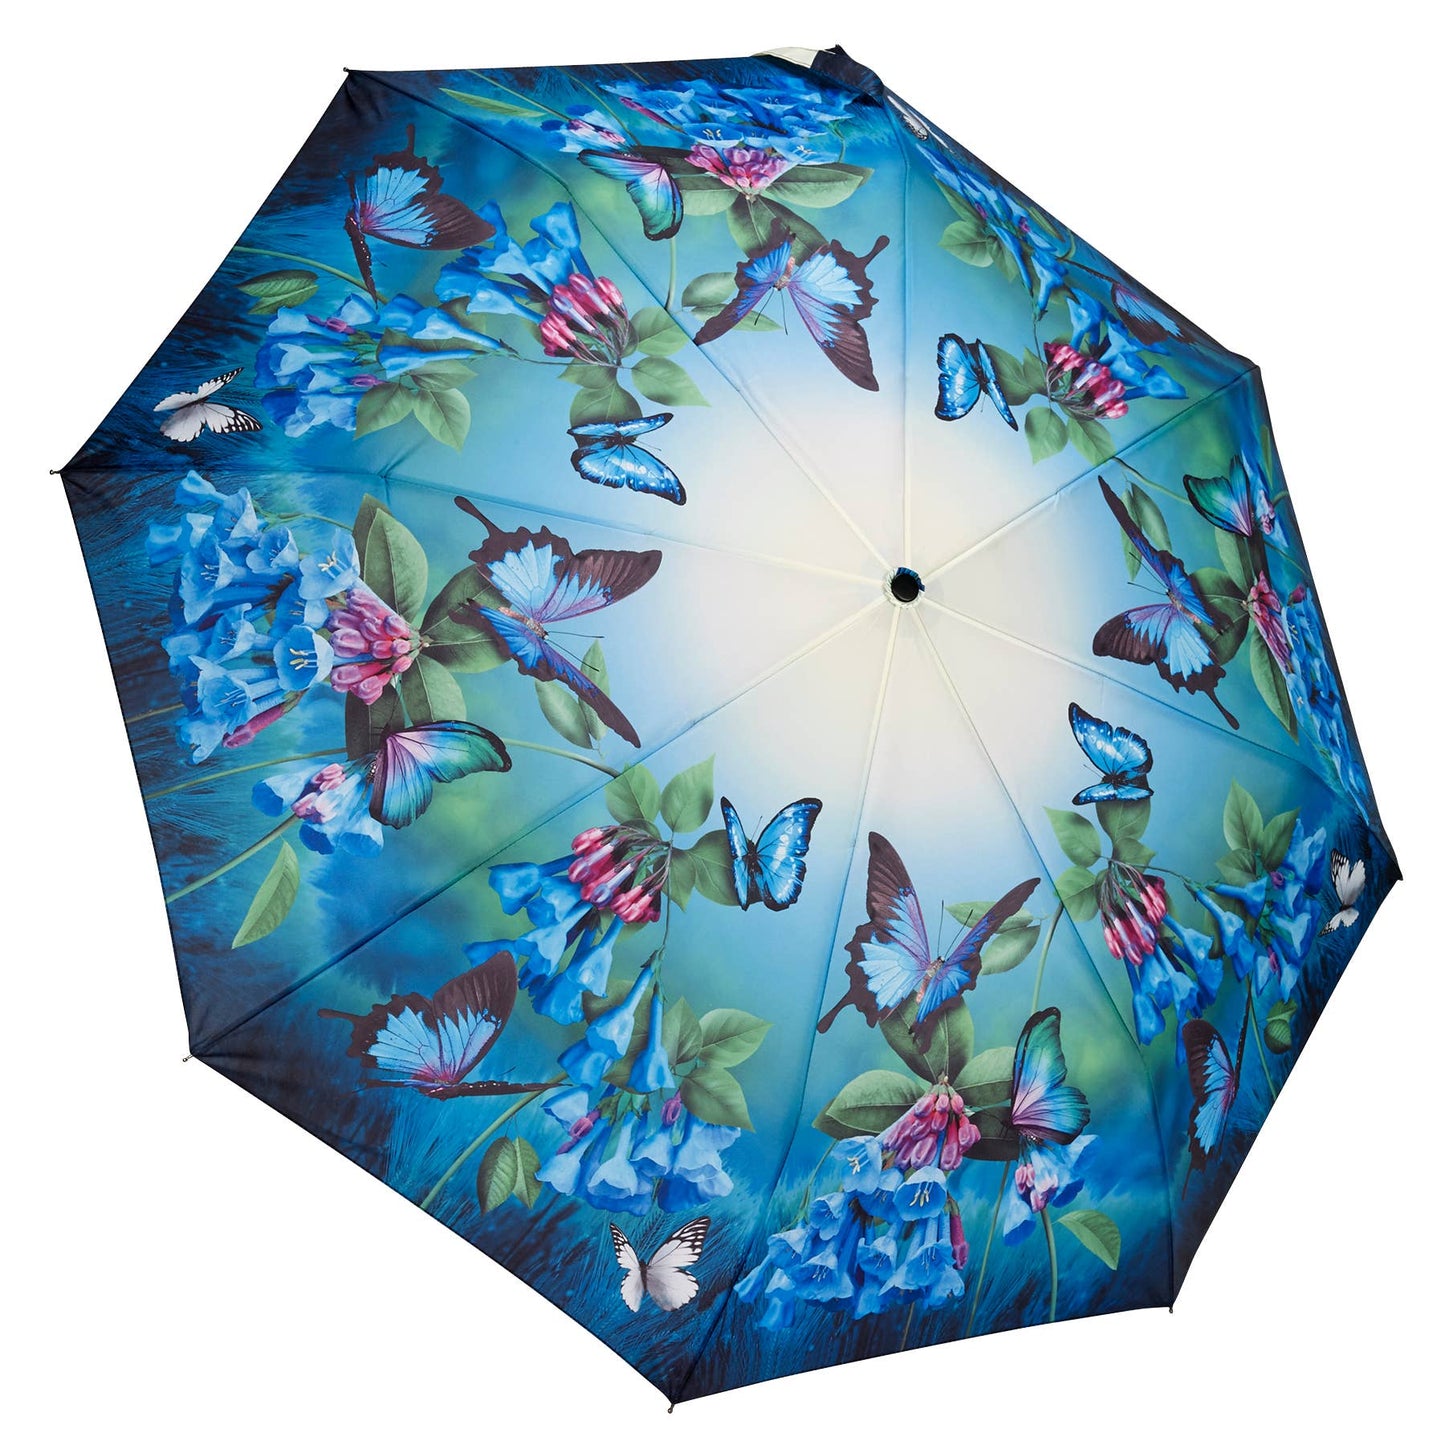 Galleria Enterprises - Bluebells Folding Umbrella